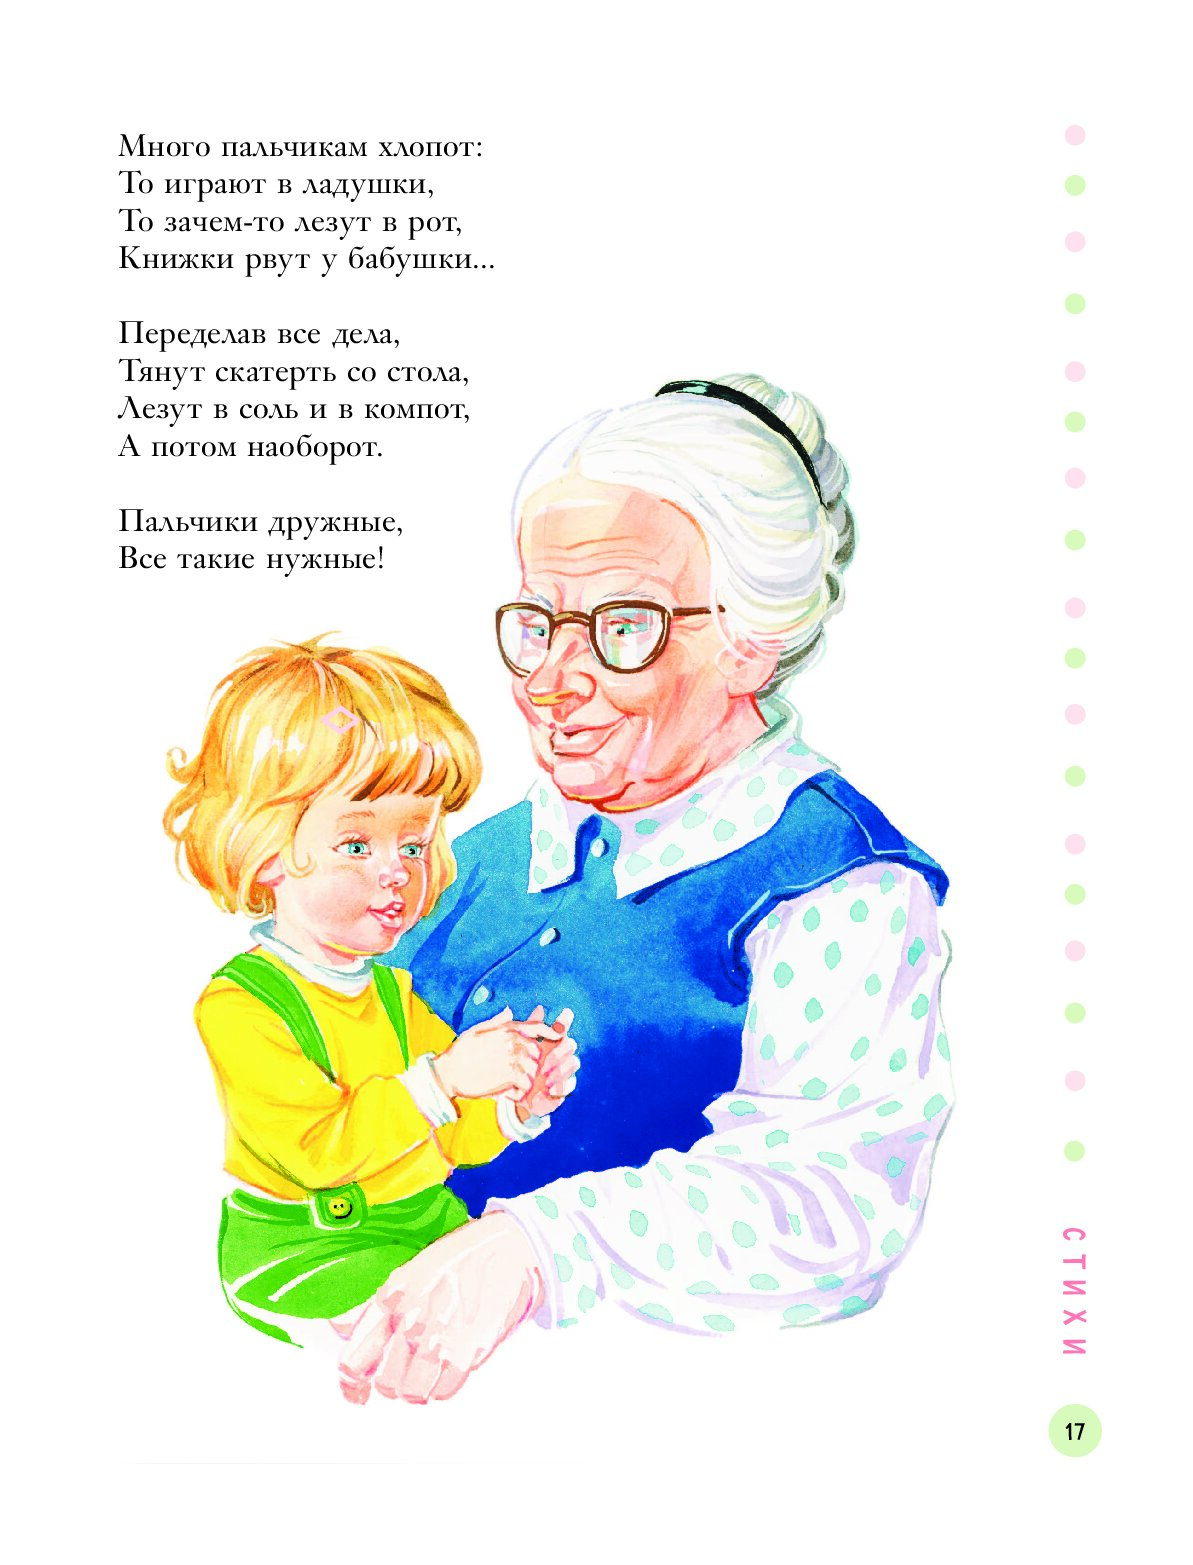 Стих бабушкины руки